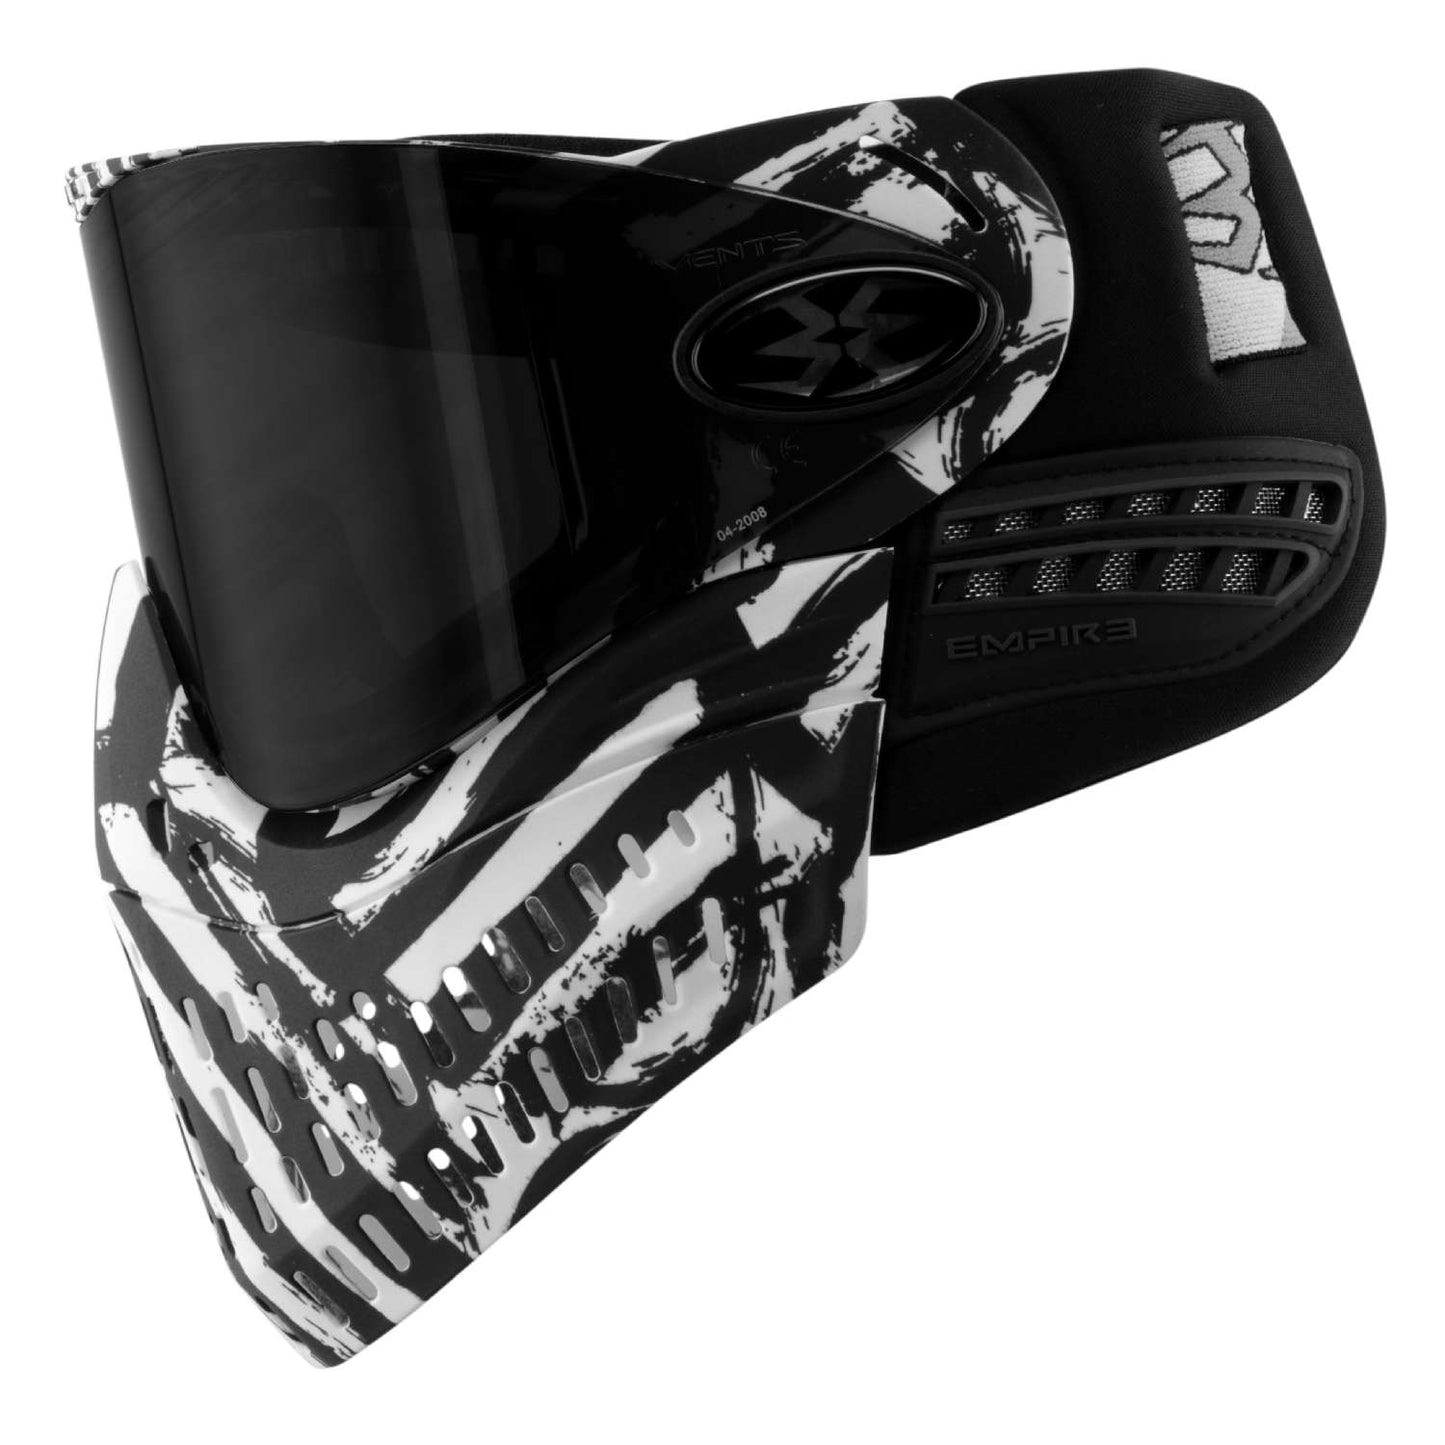 Empire E-Flex Limited Edition Thermal Goggle System - Zebra